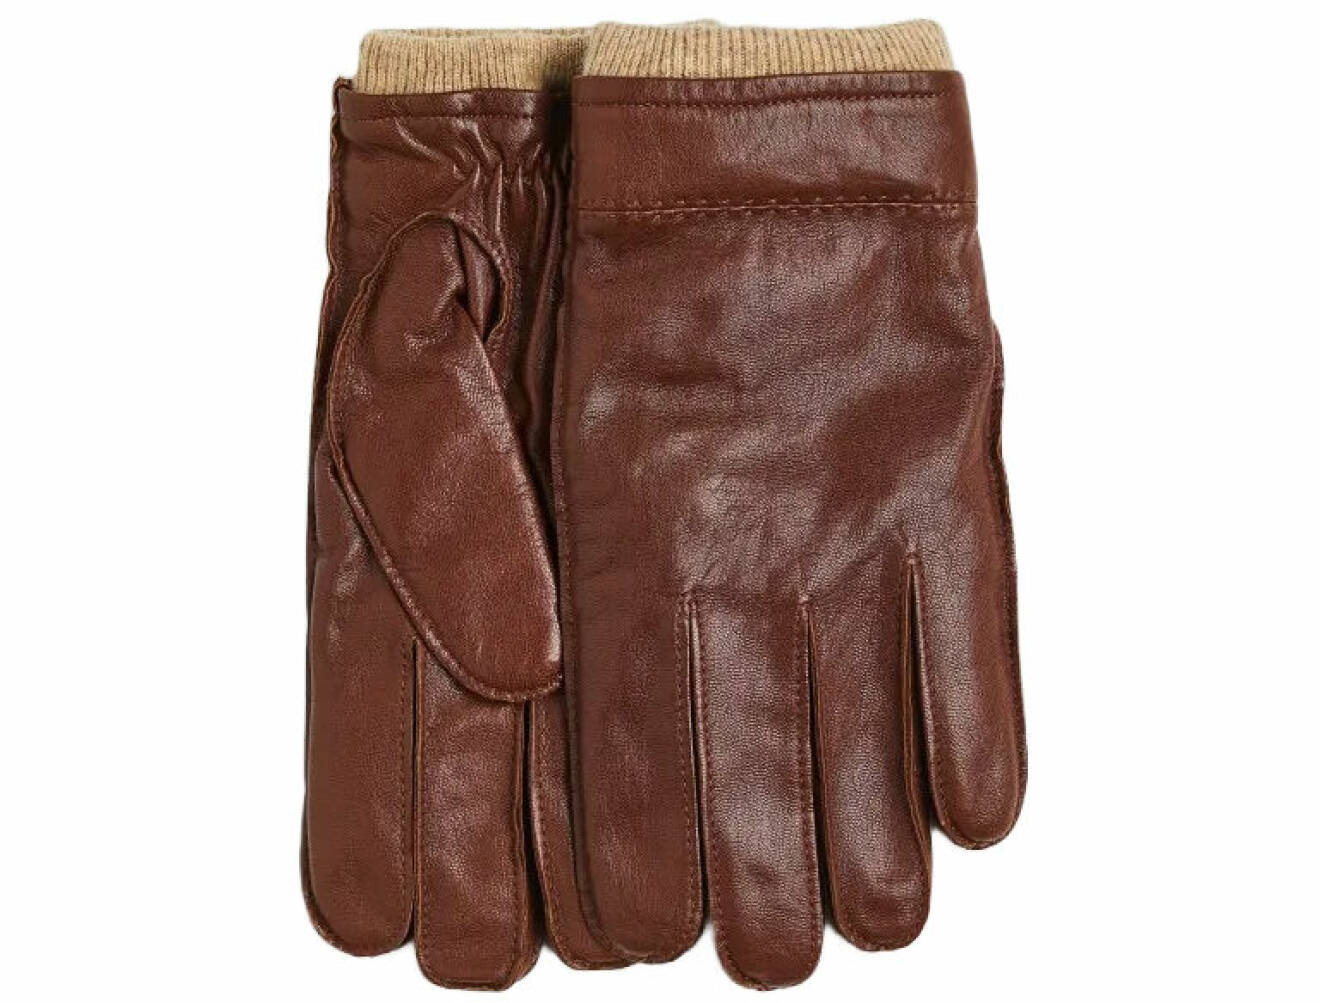 far dag present tips - handskar i läder från H&amp;M